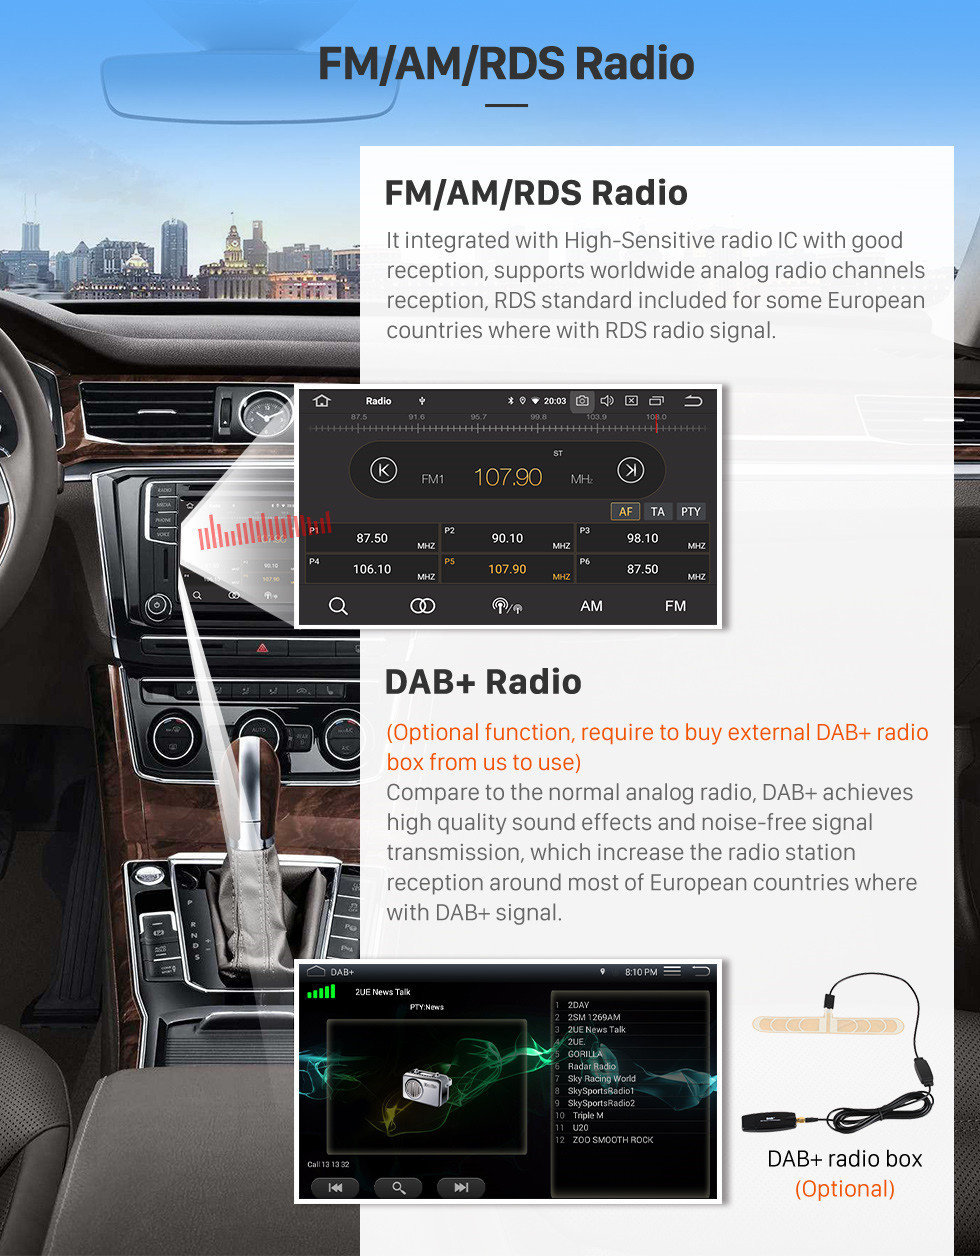 Seicane Android 11.0 HD Écran Tactile 9 pouces Navigation GPS Radio Pour 2012 Honda Civic RHD Commande Au Volant Bluetooth Wifi FM support OBD2 DVR